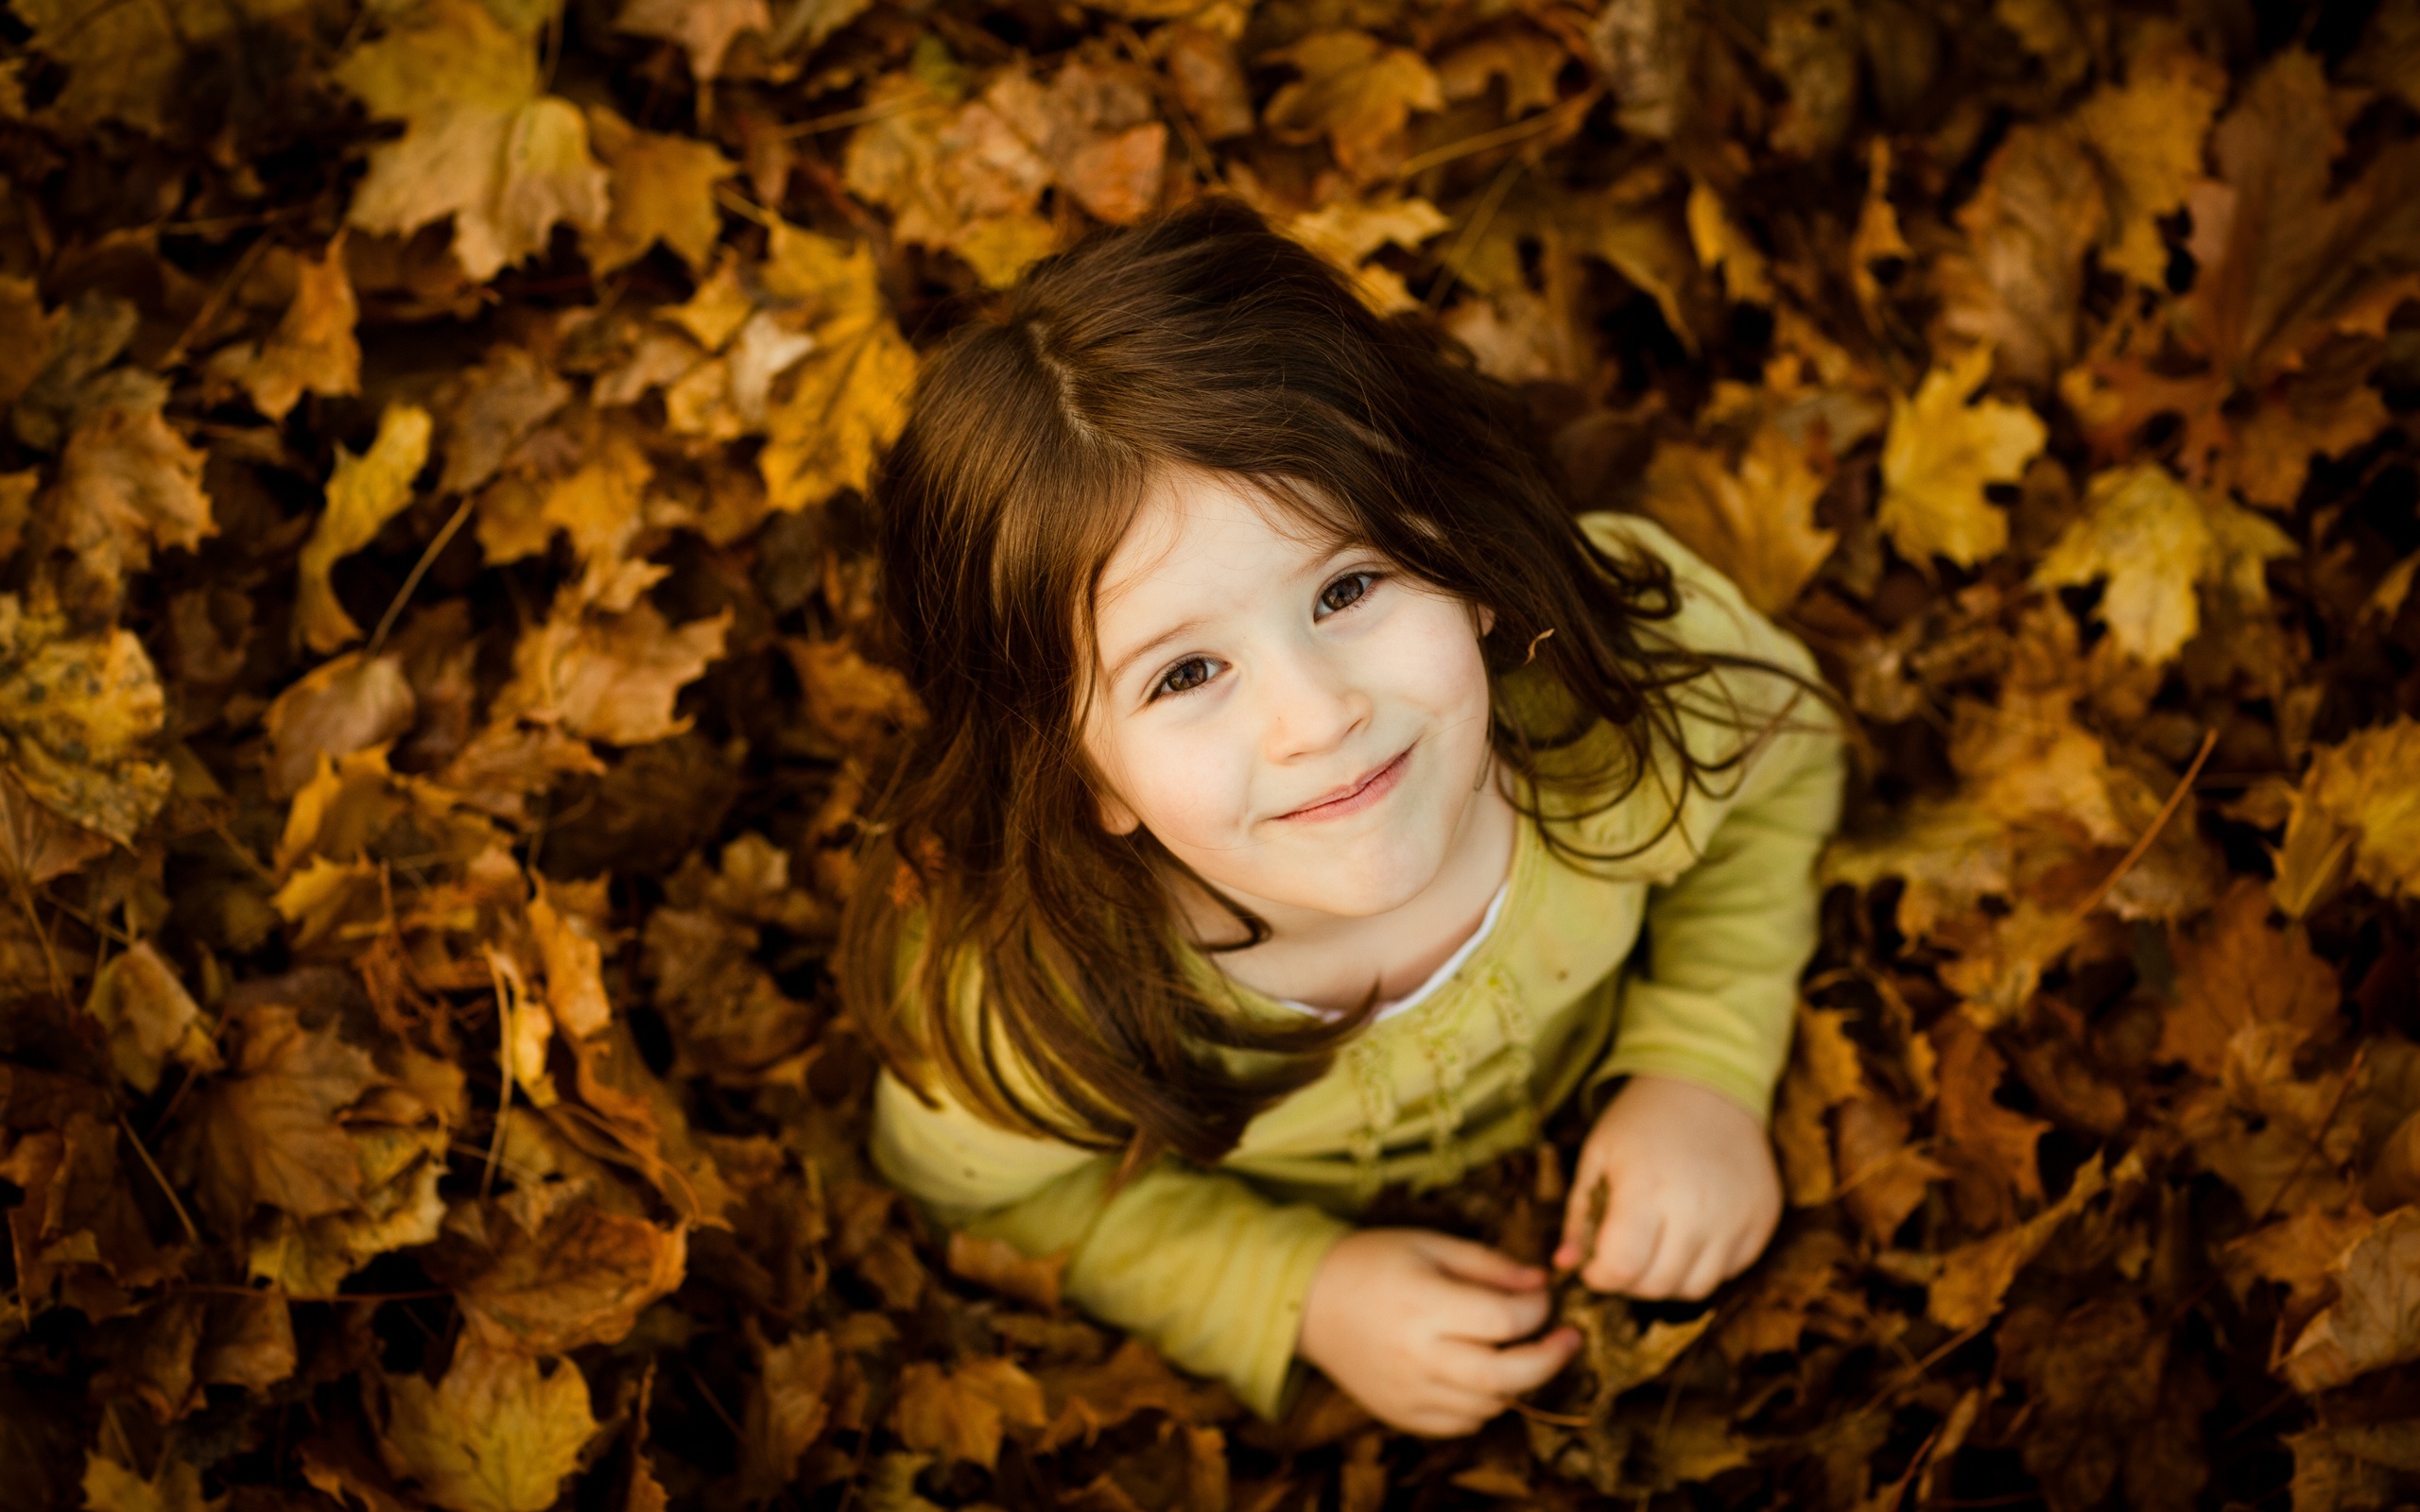 sfondi foto per bambini,foglia,giallo,bellezza,autunno,ritratto